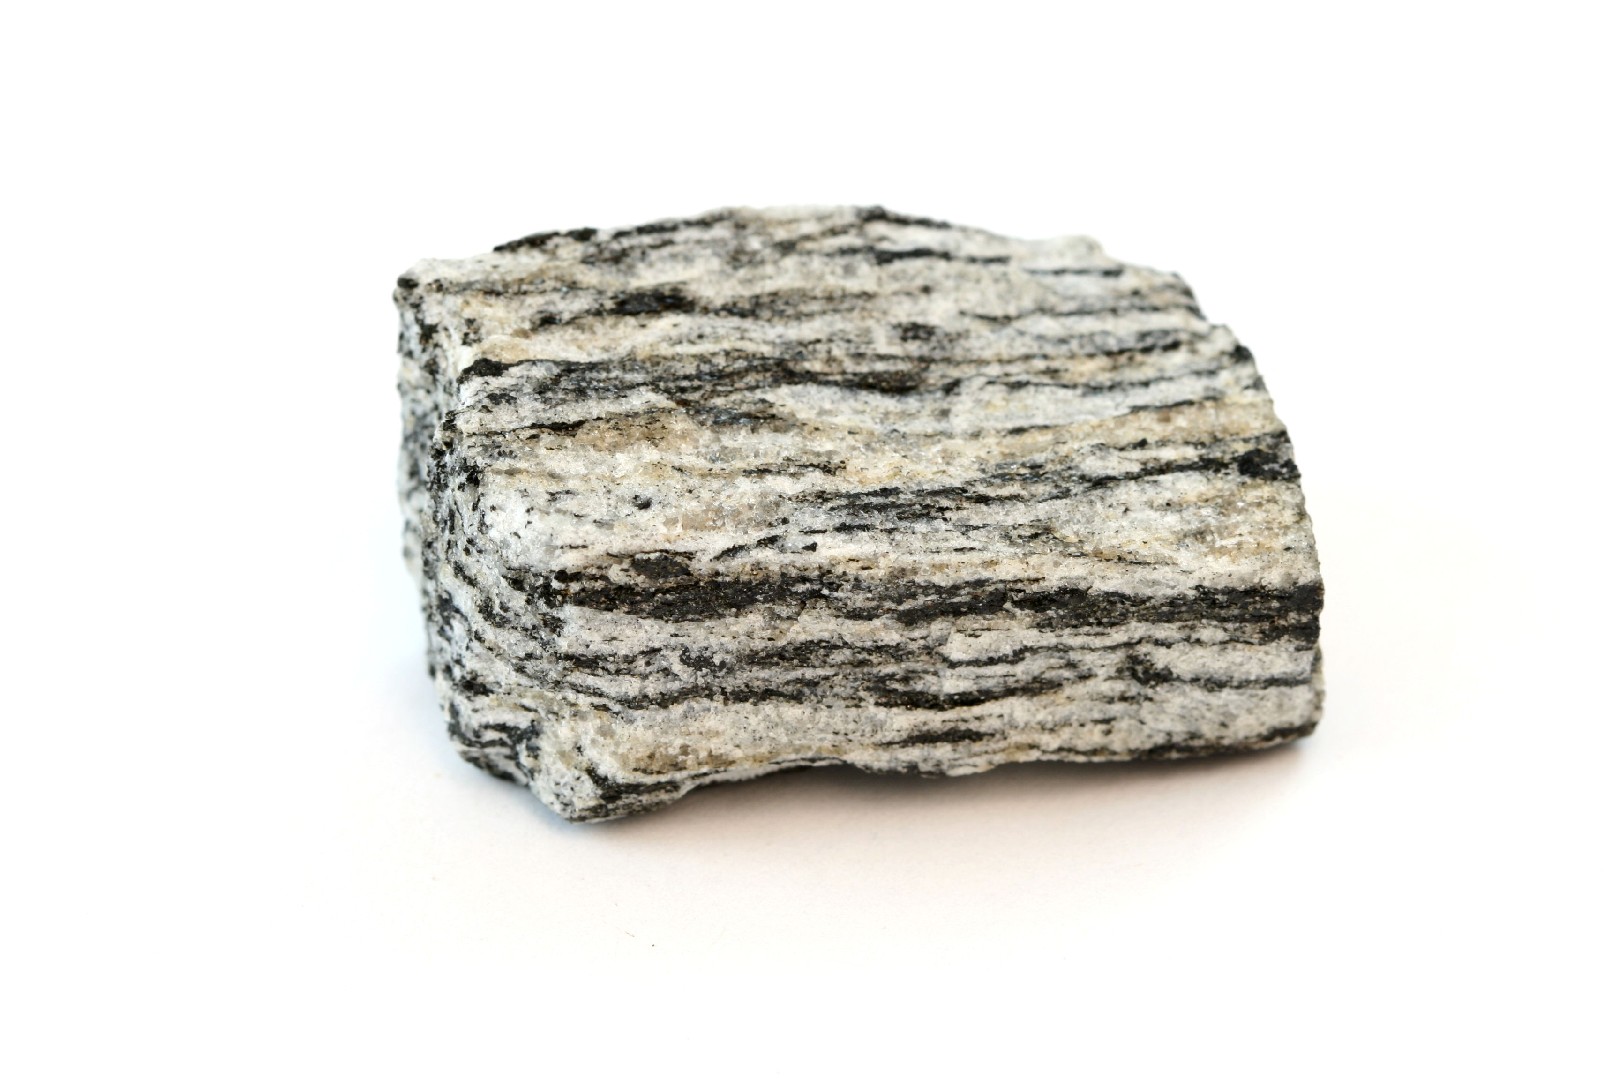 ヘンマガン（片麻岩） (Gneiss)